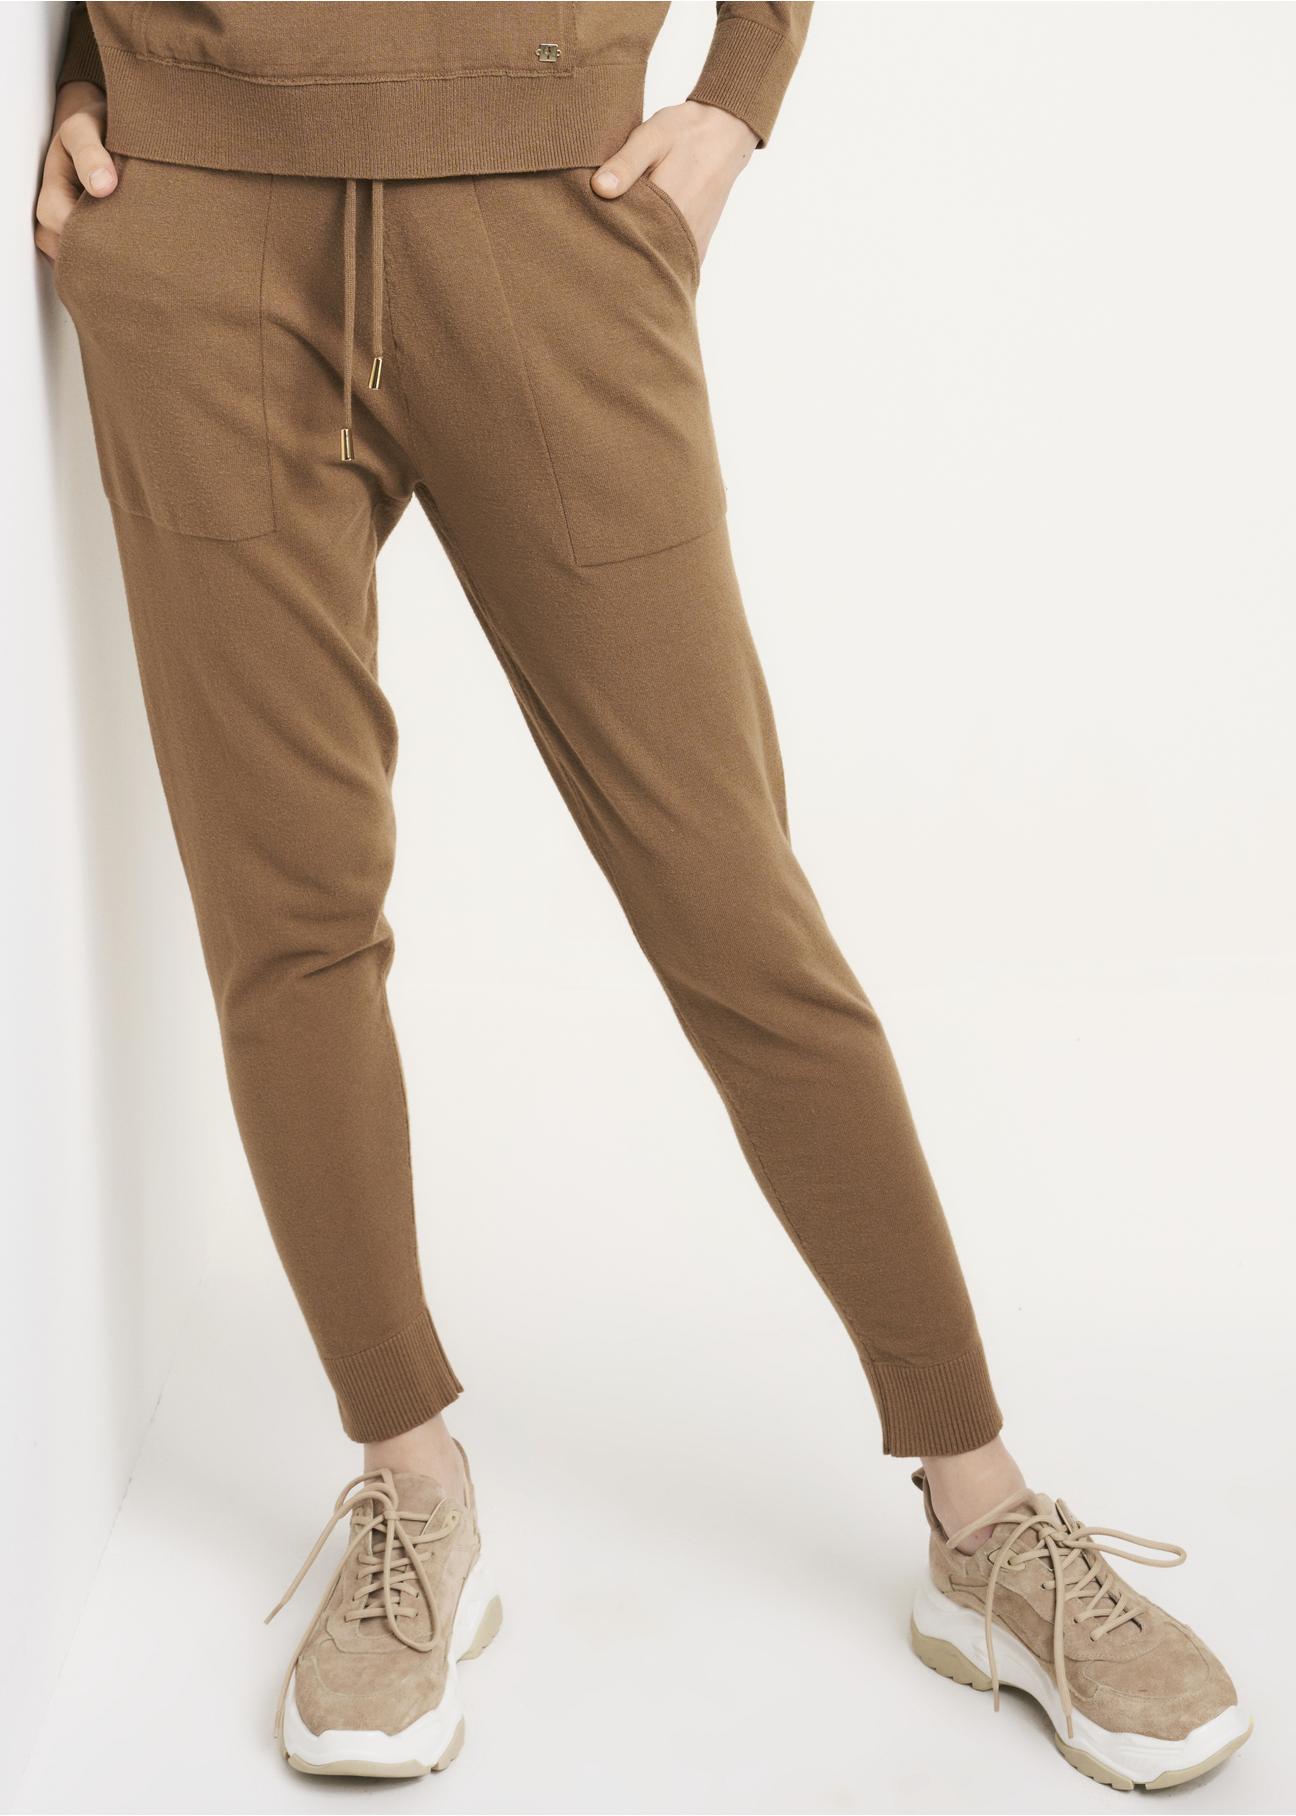 Beżowe spodnie  dresowe damskie SPODT-0073-81(Z22)